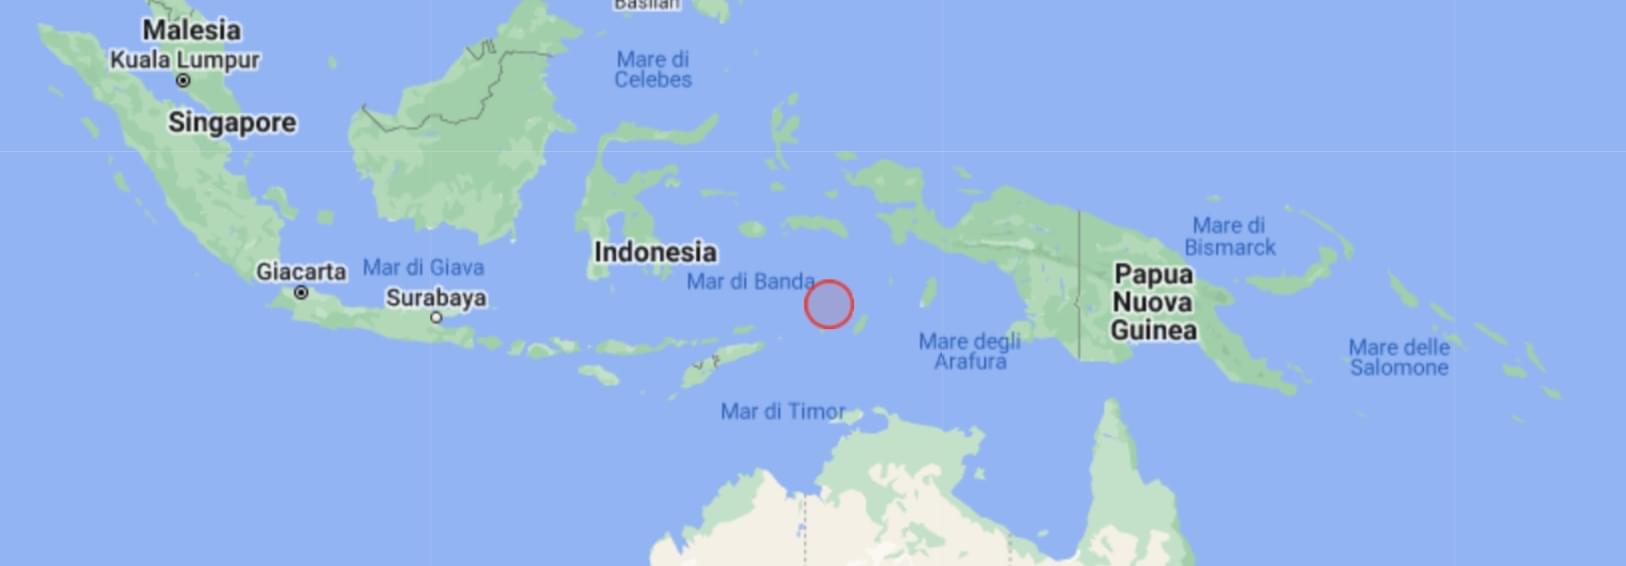 Scossa in Indonesia nel Mar di Banda M4.8 alle ore 12:13 ora italiana del 25 settembre 2022